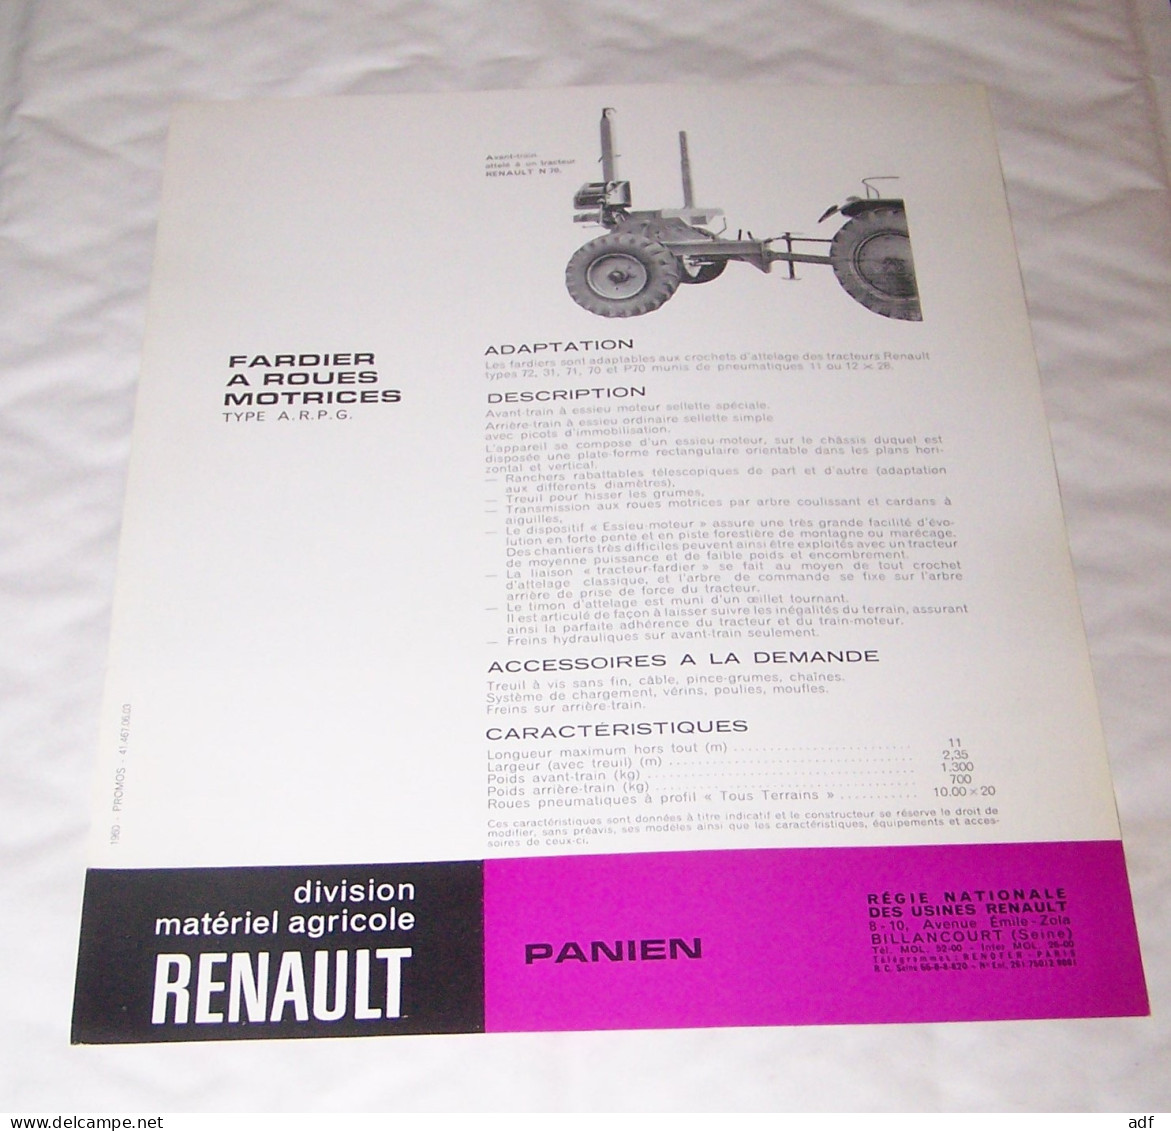 FEUILLET PUB PUBLICITAIRE MATERIEL RENAULT FARDIER A ROUES MOTRICES PANIEN ( TRACTEUR, TRACTEURS, MOTOCULTURE ) - Traktoren